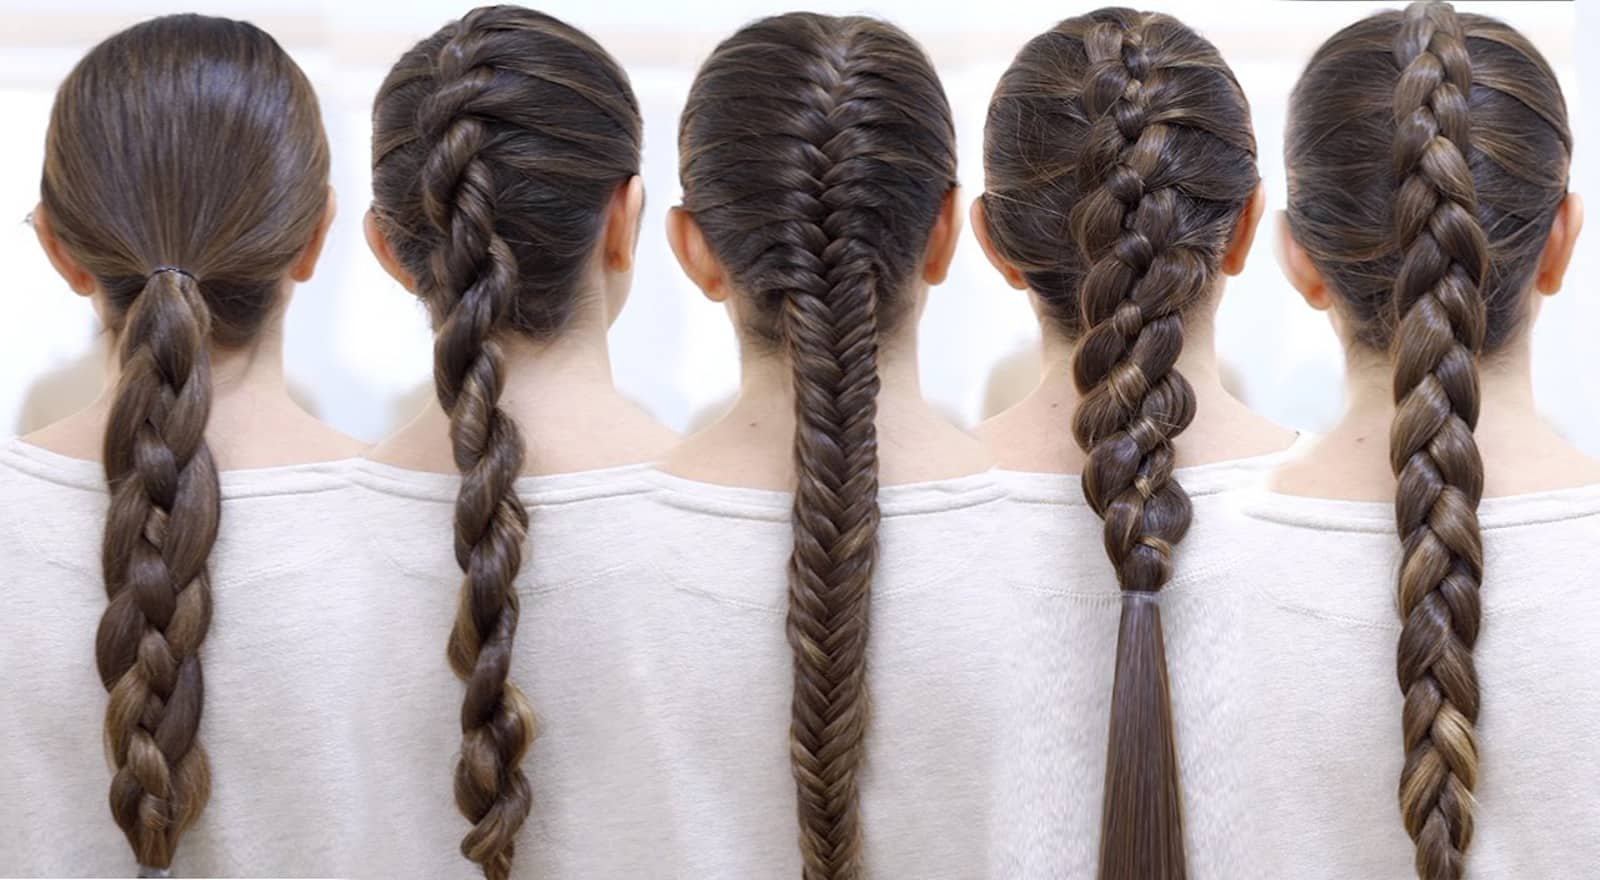 2 кос 1 0. Красивые причёски для девочек в школу. Плетение на длинные волосы для девочек в школу. Школьные прически для девочек. Колосок на длинные волосы для девочек.